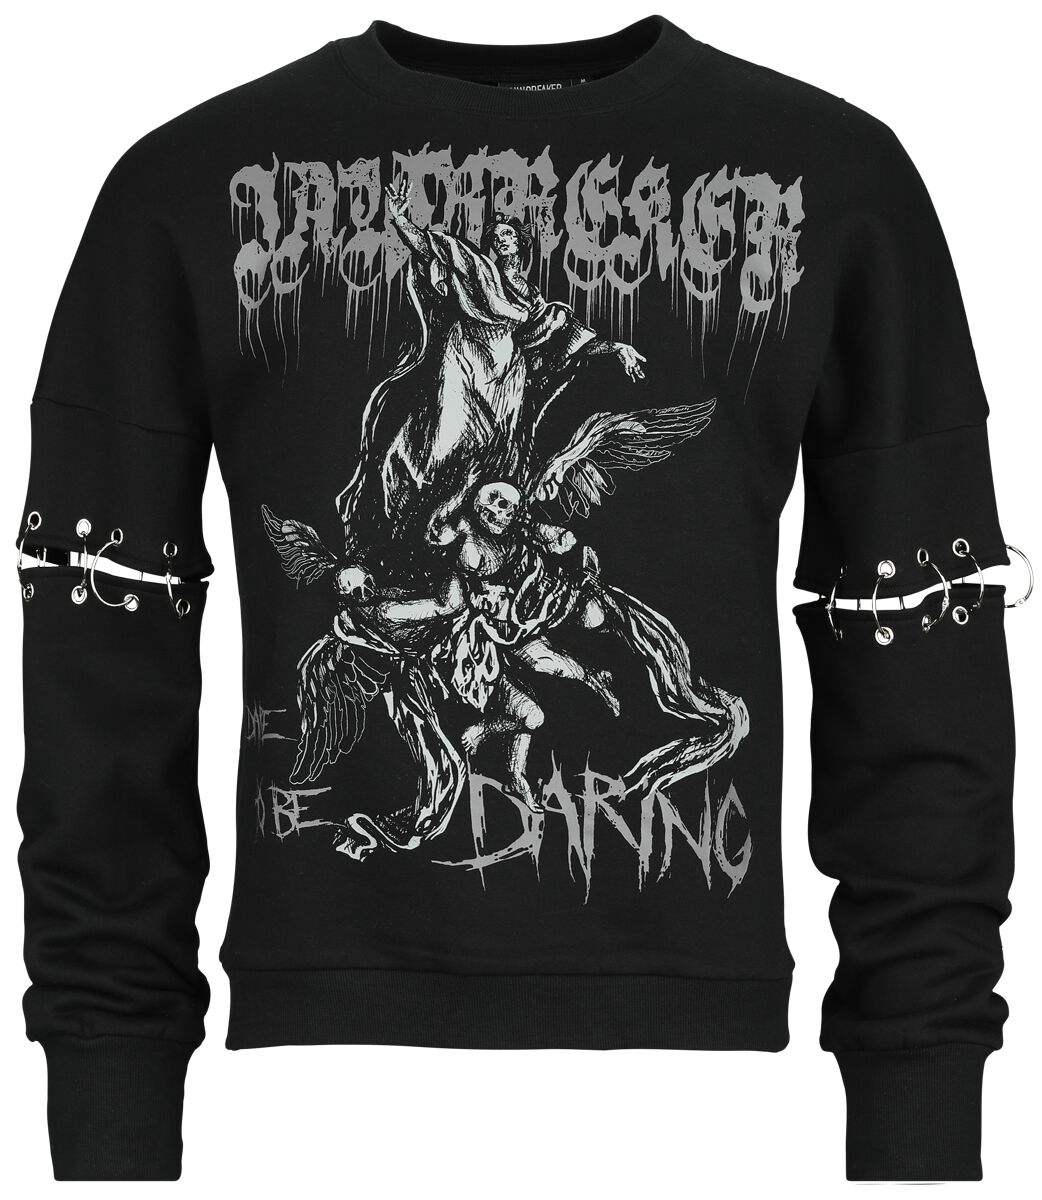 Jawbreaker - Gothic Sweatshirt - Dare To Be Daring - S bis XXL - Größe S - schwarz